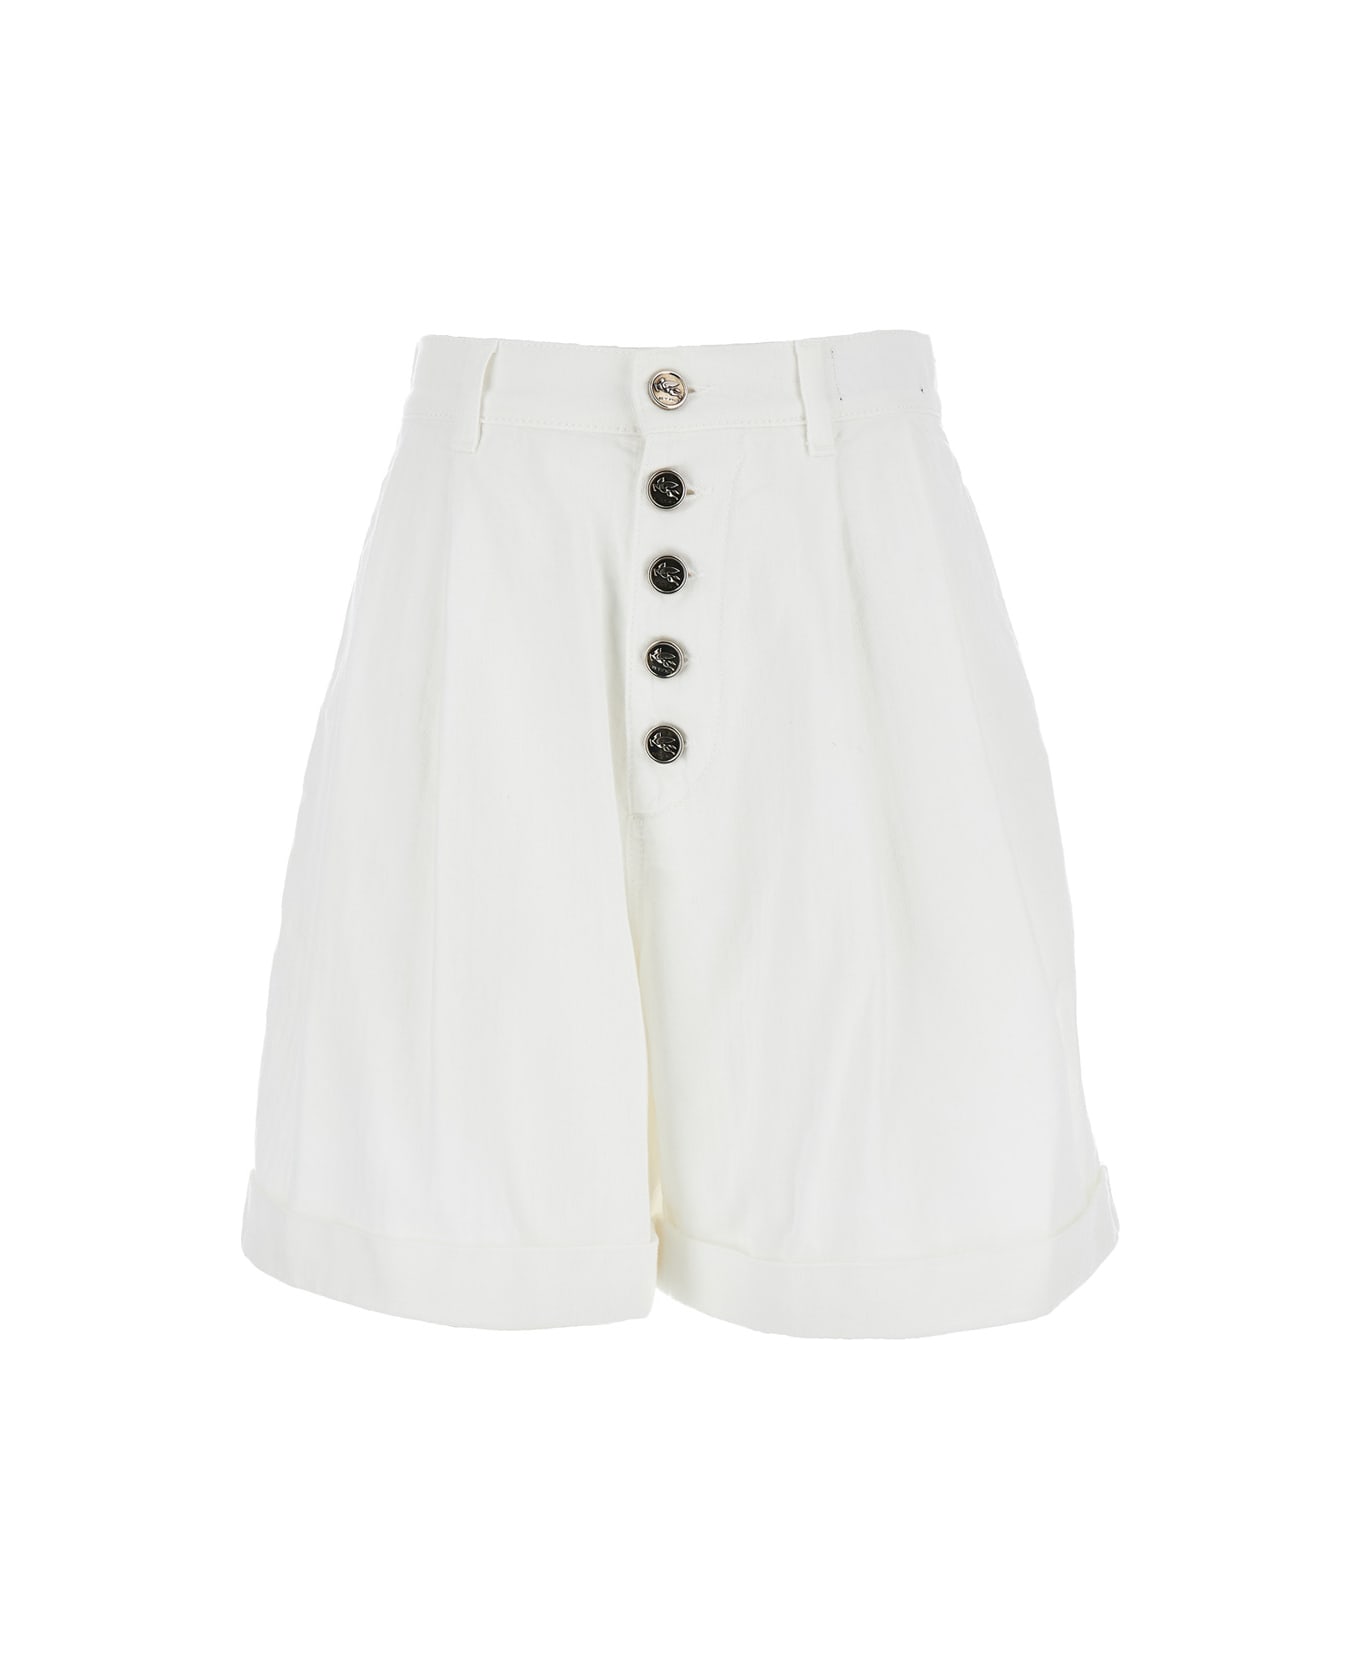 Etro White Bermuda Shorts In Cotton Woman - White